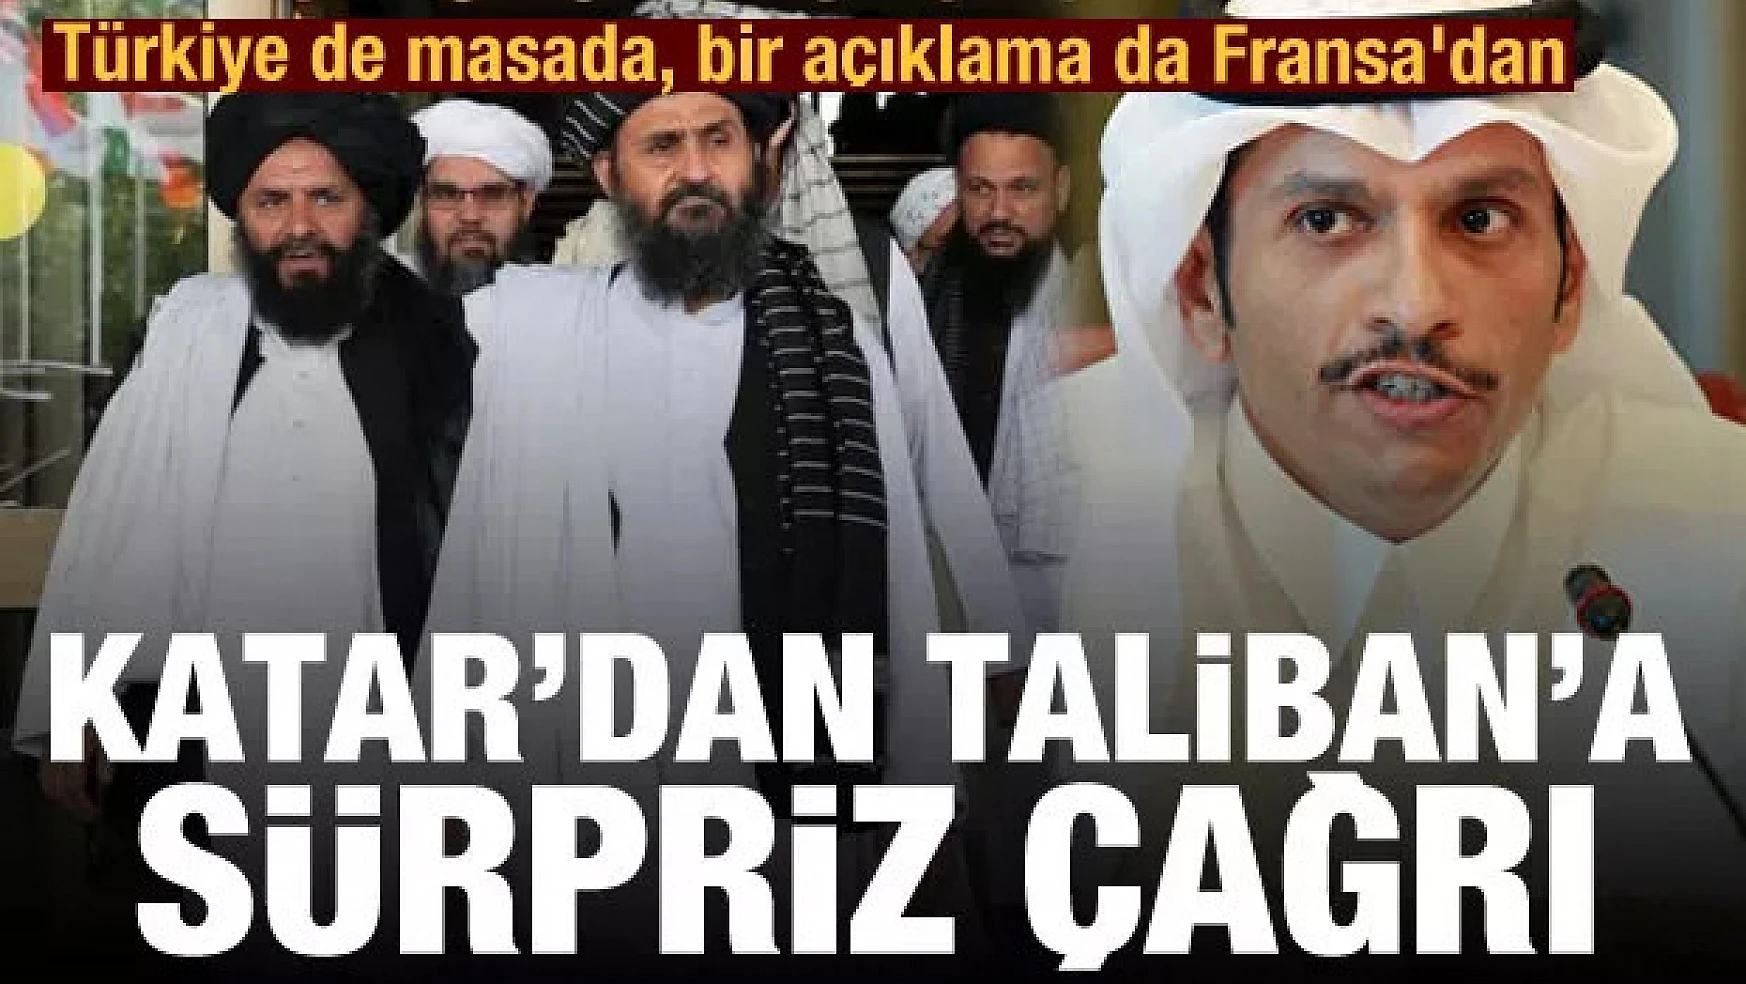 Katar'dan Taliban'a dikkat çeken çağrı! Türkiye de masada, bir açıklama da Fransa'dan